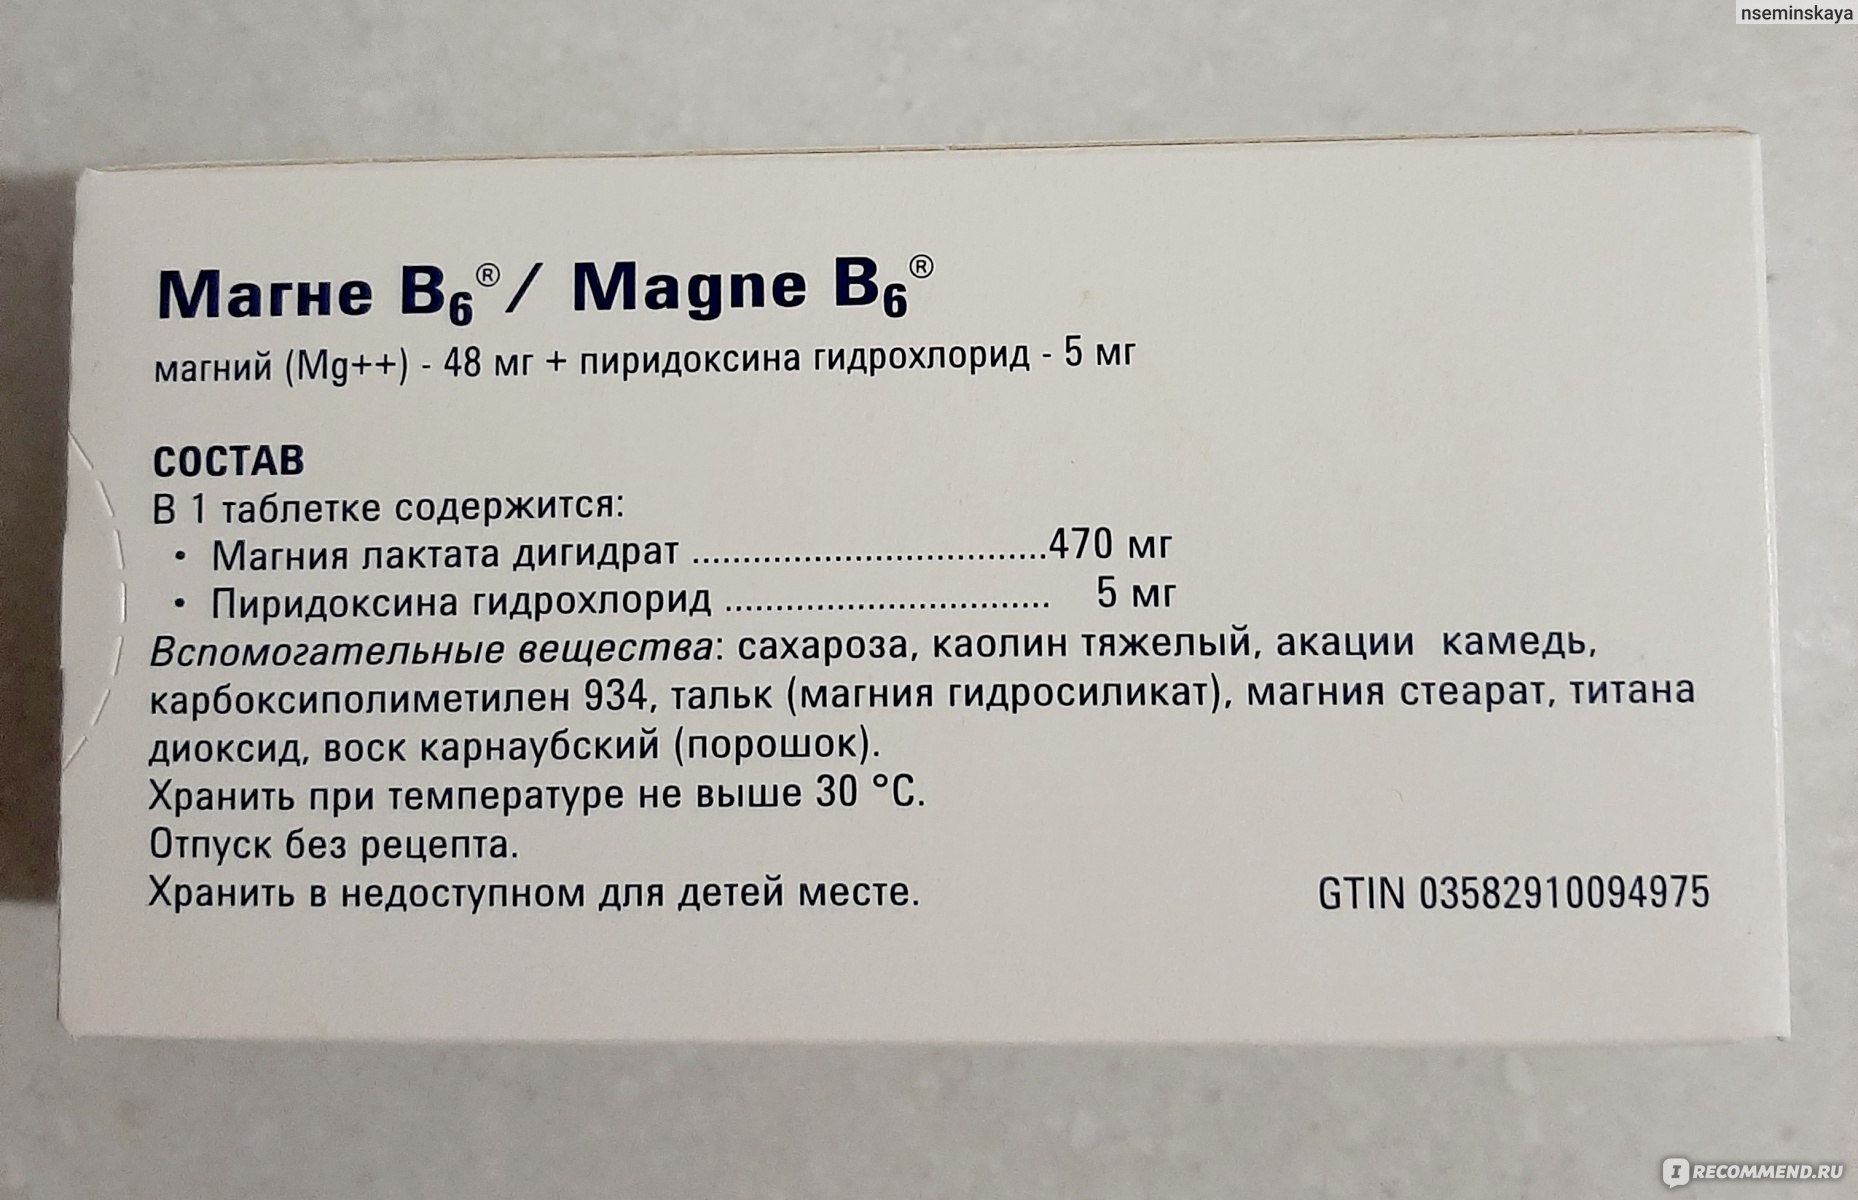 Что будет если пить магний. Магний б6 + пиридоксина гидрохлорид. Магне в6 магний пиридоксина гидрохлорид. Магний б6 (магний лактат+пиридоксина гидрохлорид. Магния лактат 470 мг пиридоксина гидрохлорид 5 мг.